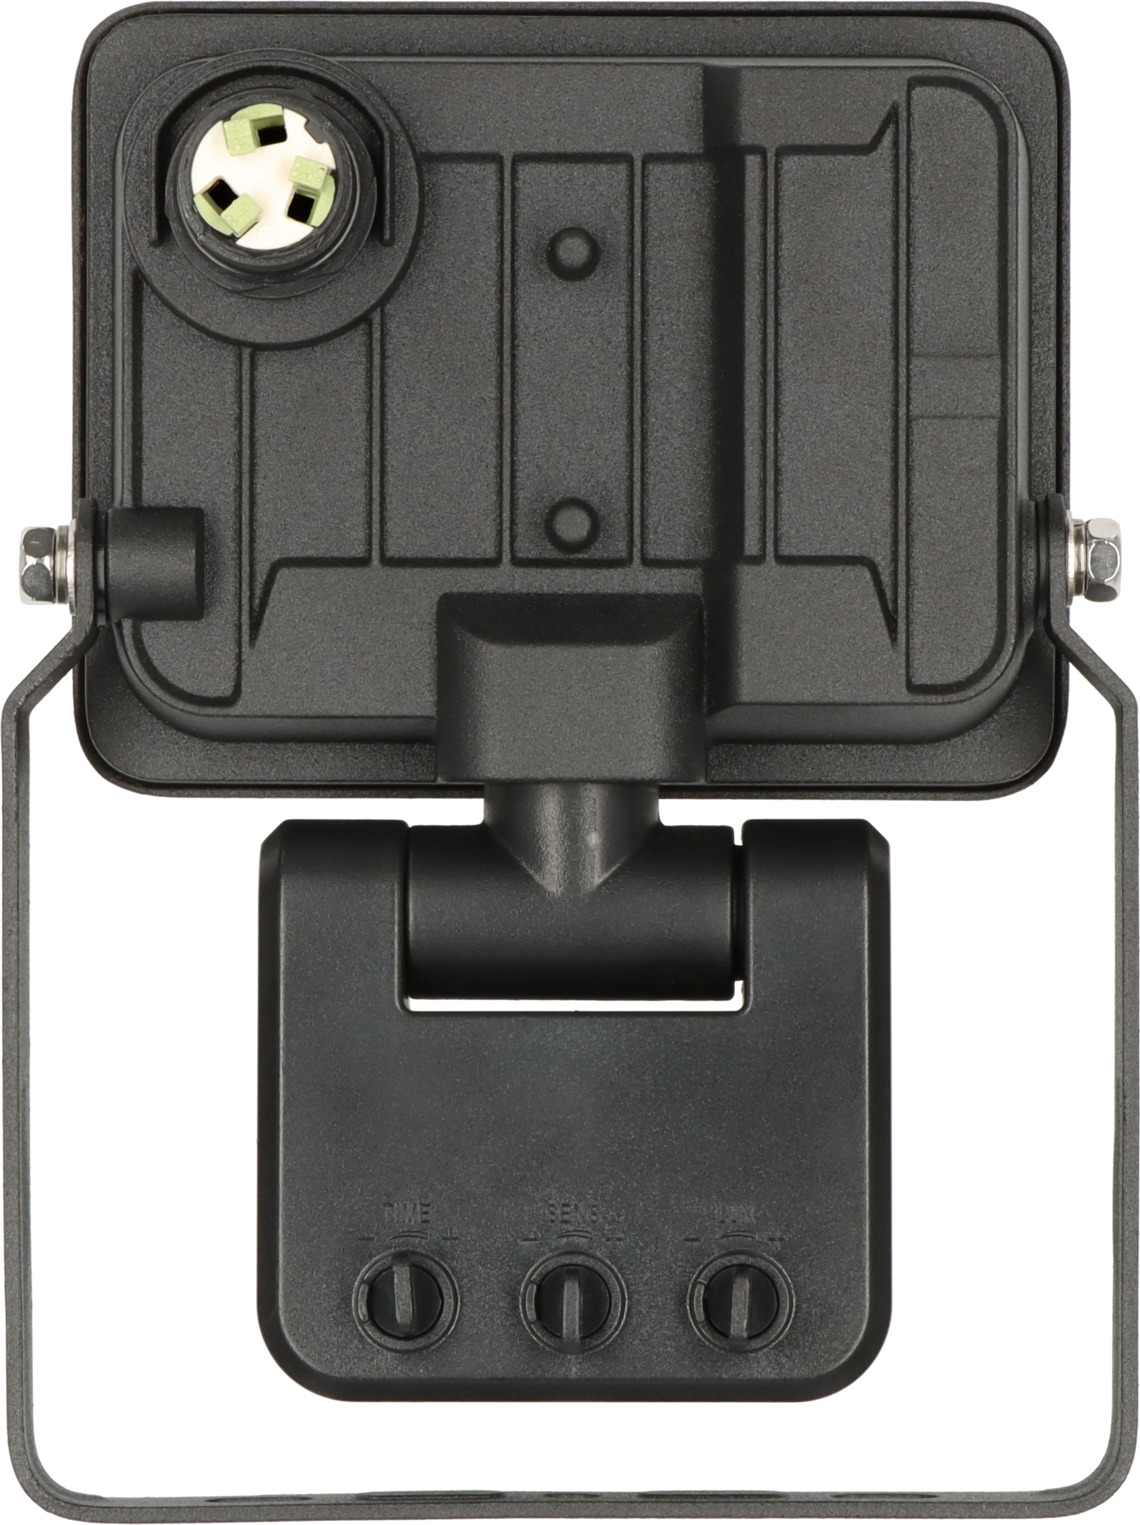 LED Strahler JARO 1060 P 10W, brennenstuhl® IP65 1150lm, mit Infrarot-Bewegungsmelder, 